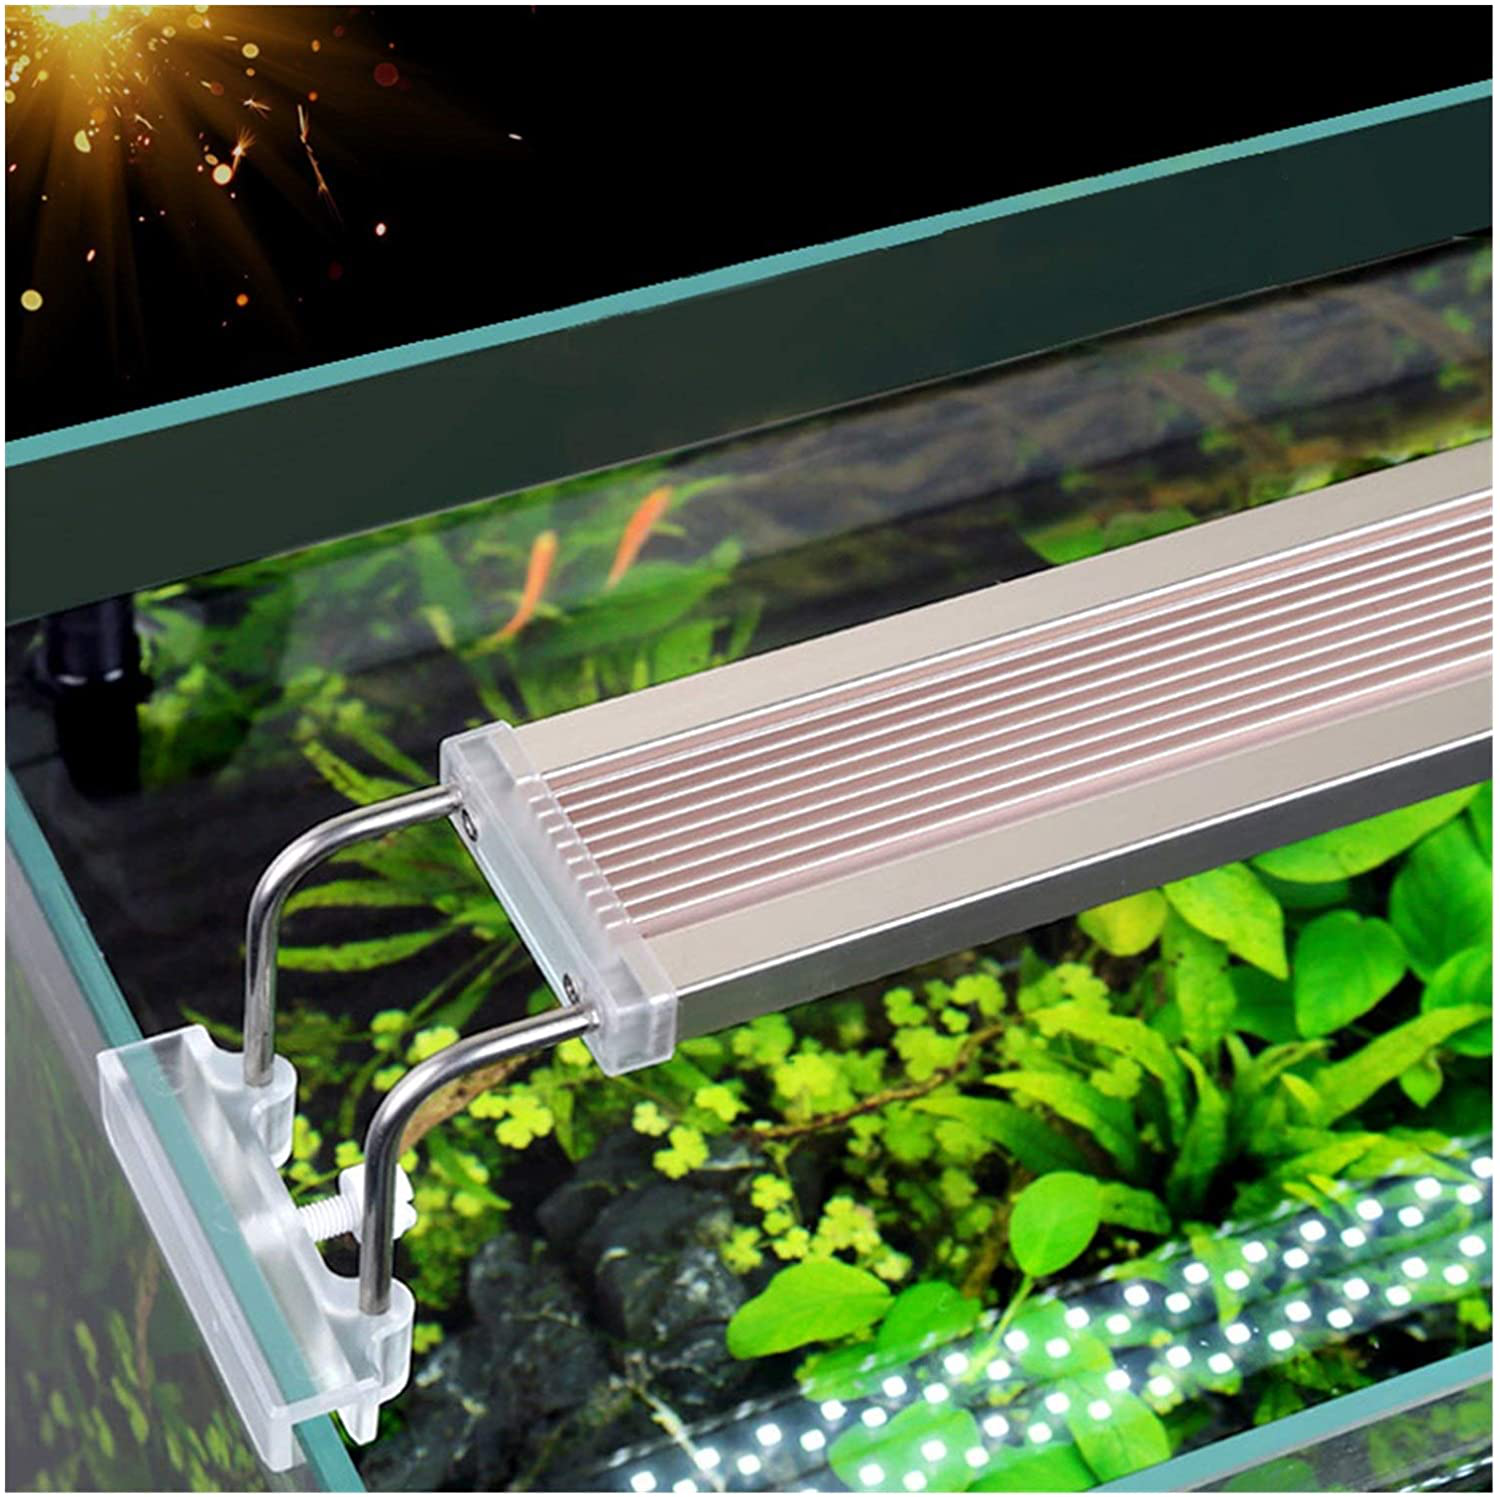 HXY2020 Pet Heating Pad Aquarium LED Lighting Lamp Aquatic Plant Fish Tank LED Light Aquarium Light 5-24W Ultra Slim Grow Lighting Lampe Reptile & Amphibian Habitat